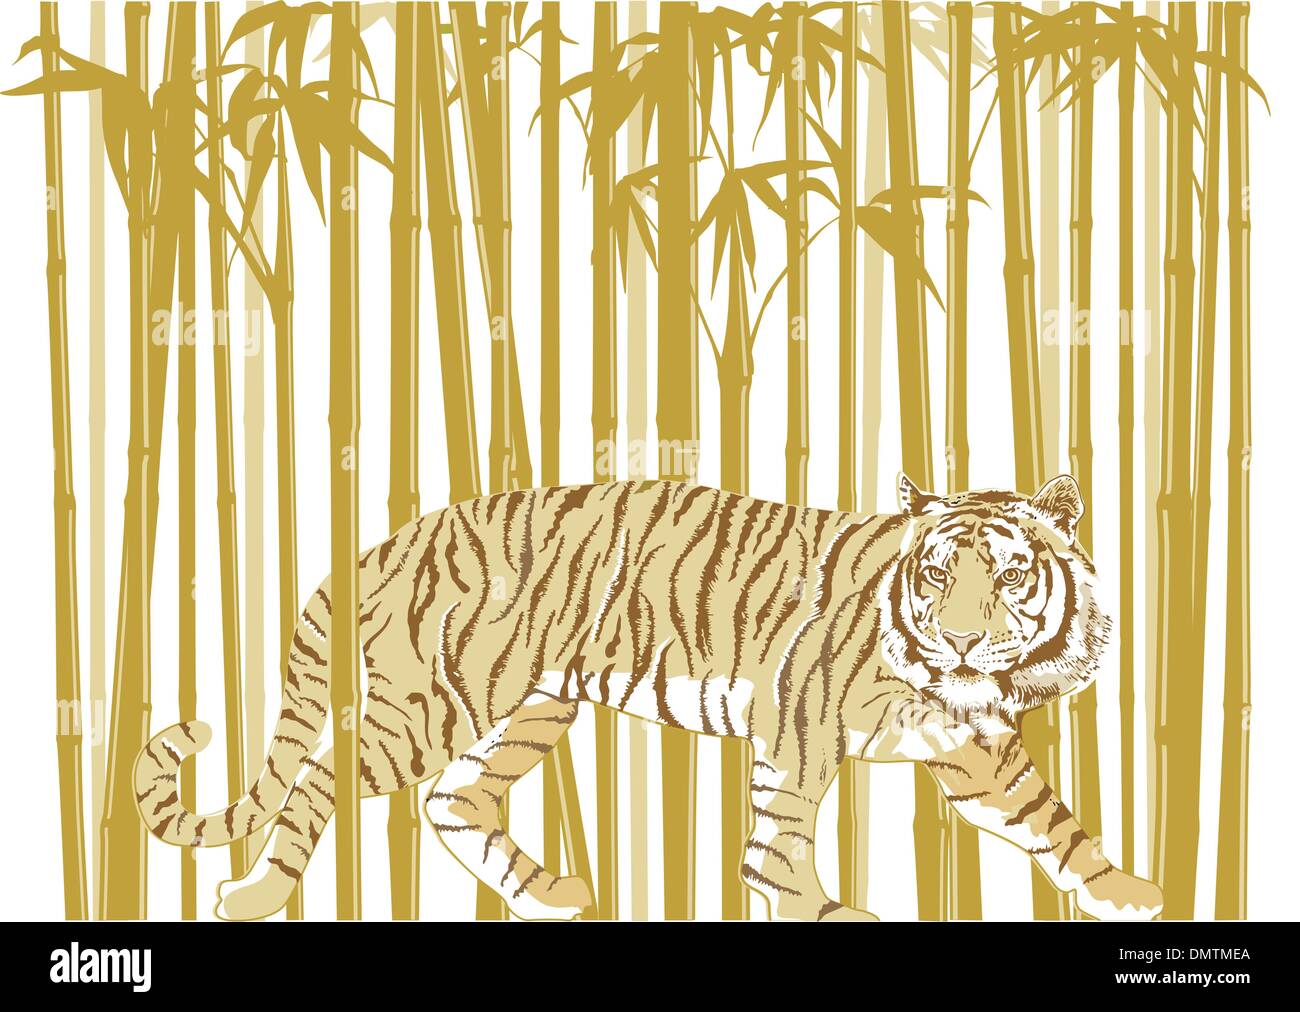 Tigre nella Foresta di Bamboo Illustrazione Vettoriale